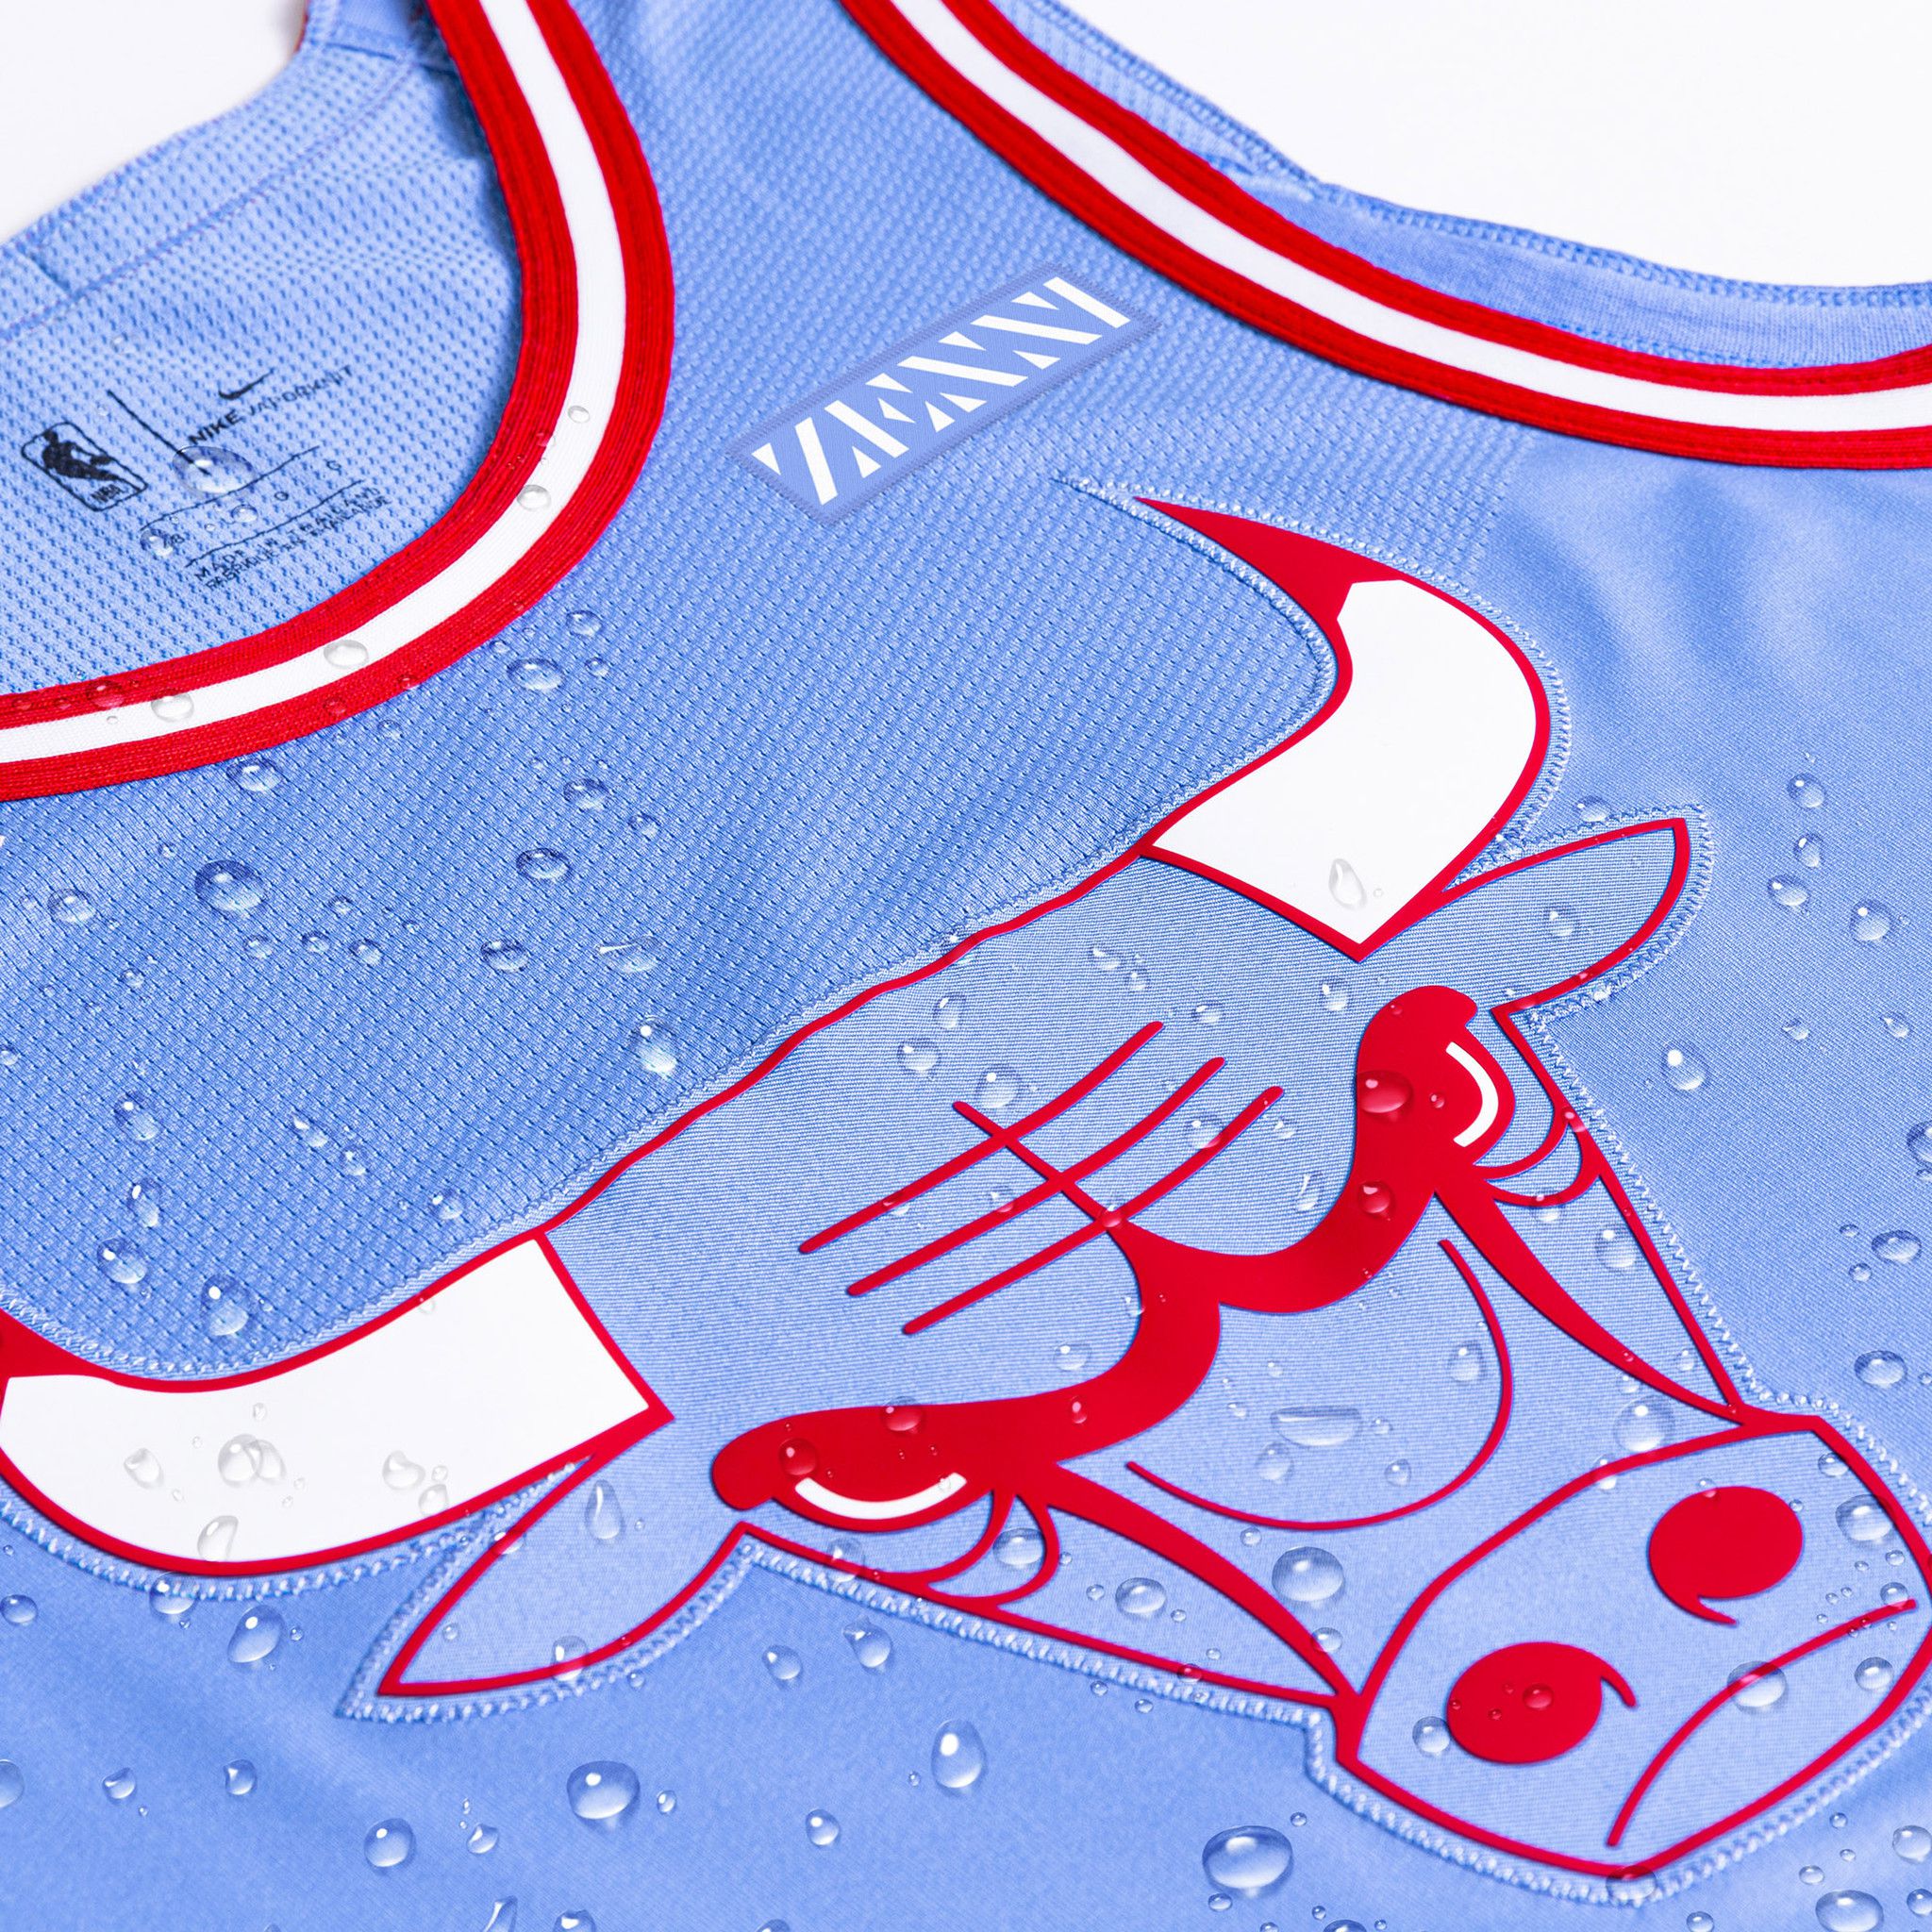 Chicago Bulls unveil 2019-20 'city edition' uniforms